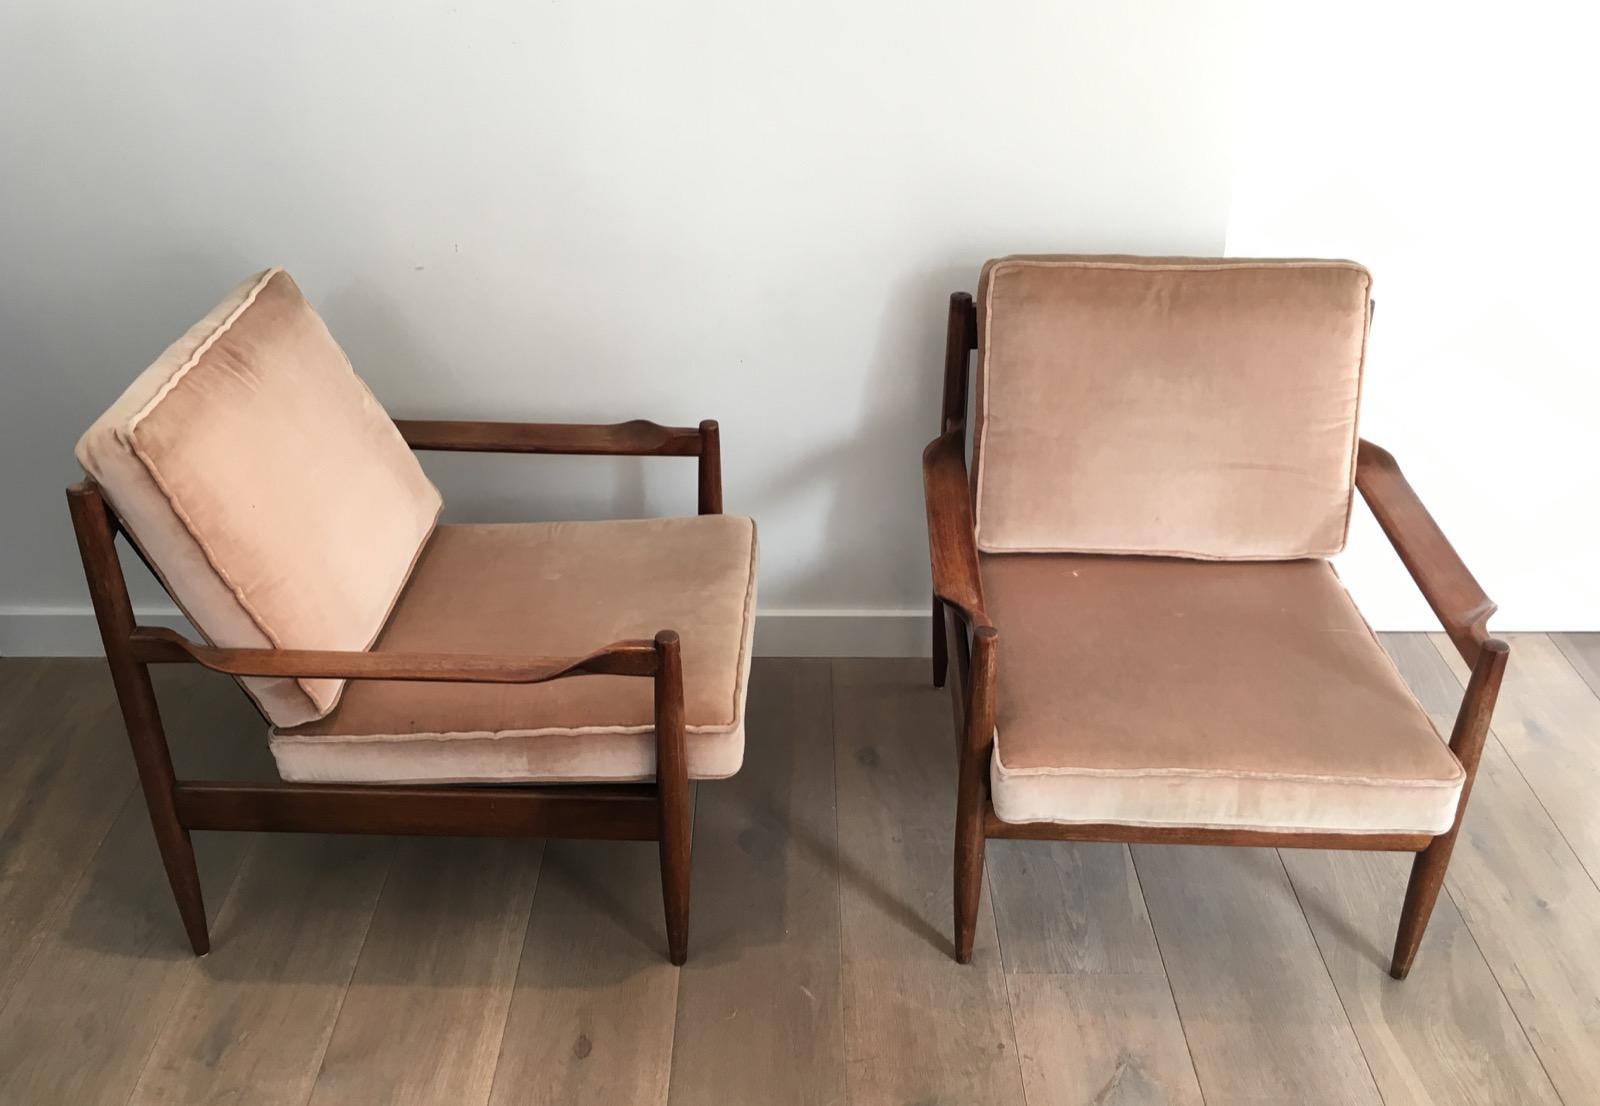 Dieses Paar skandinavischer Sessel mit Samtkissen ist aus exotischem Holz gefertigt. Diese Sessel haben ein schönes Design und sind gekennzeichnet. Sie stammen aus der Zeit um 1970.